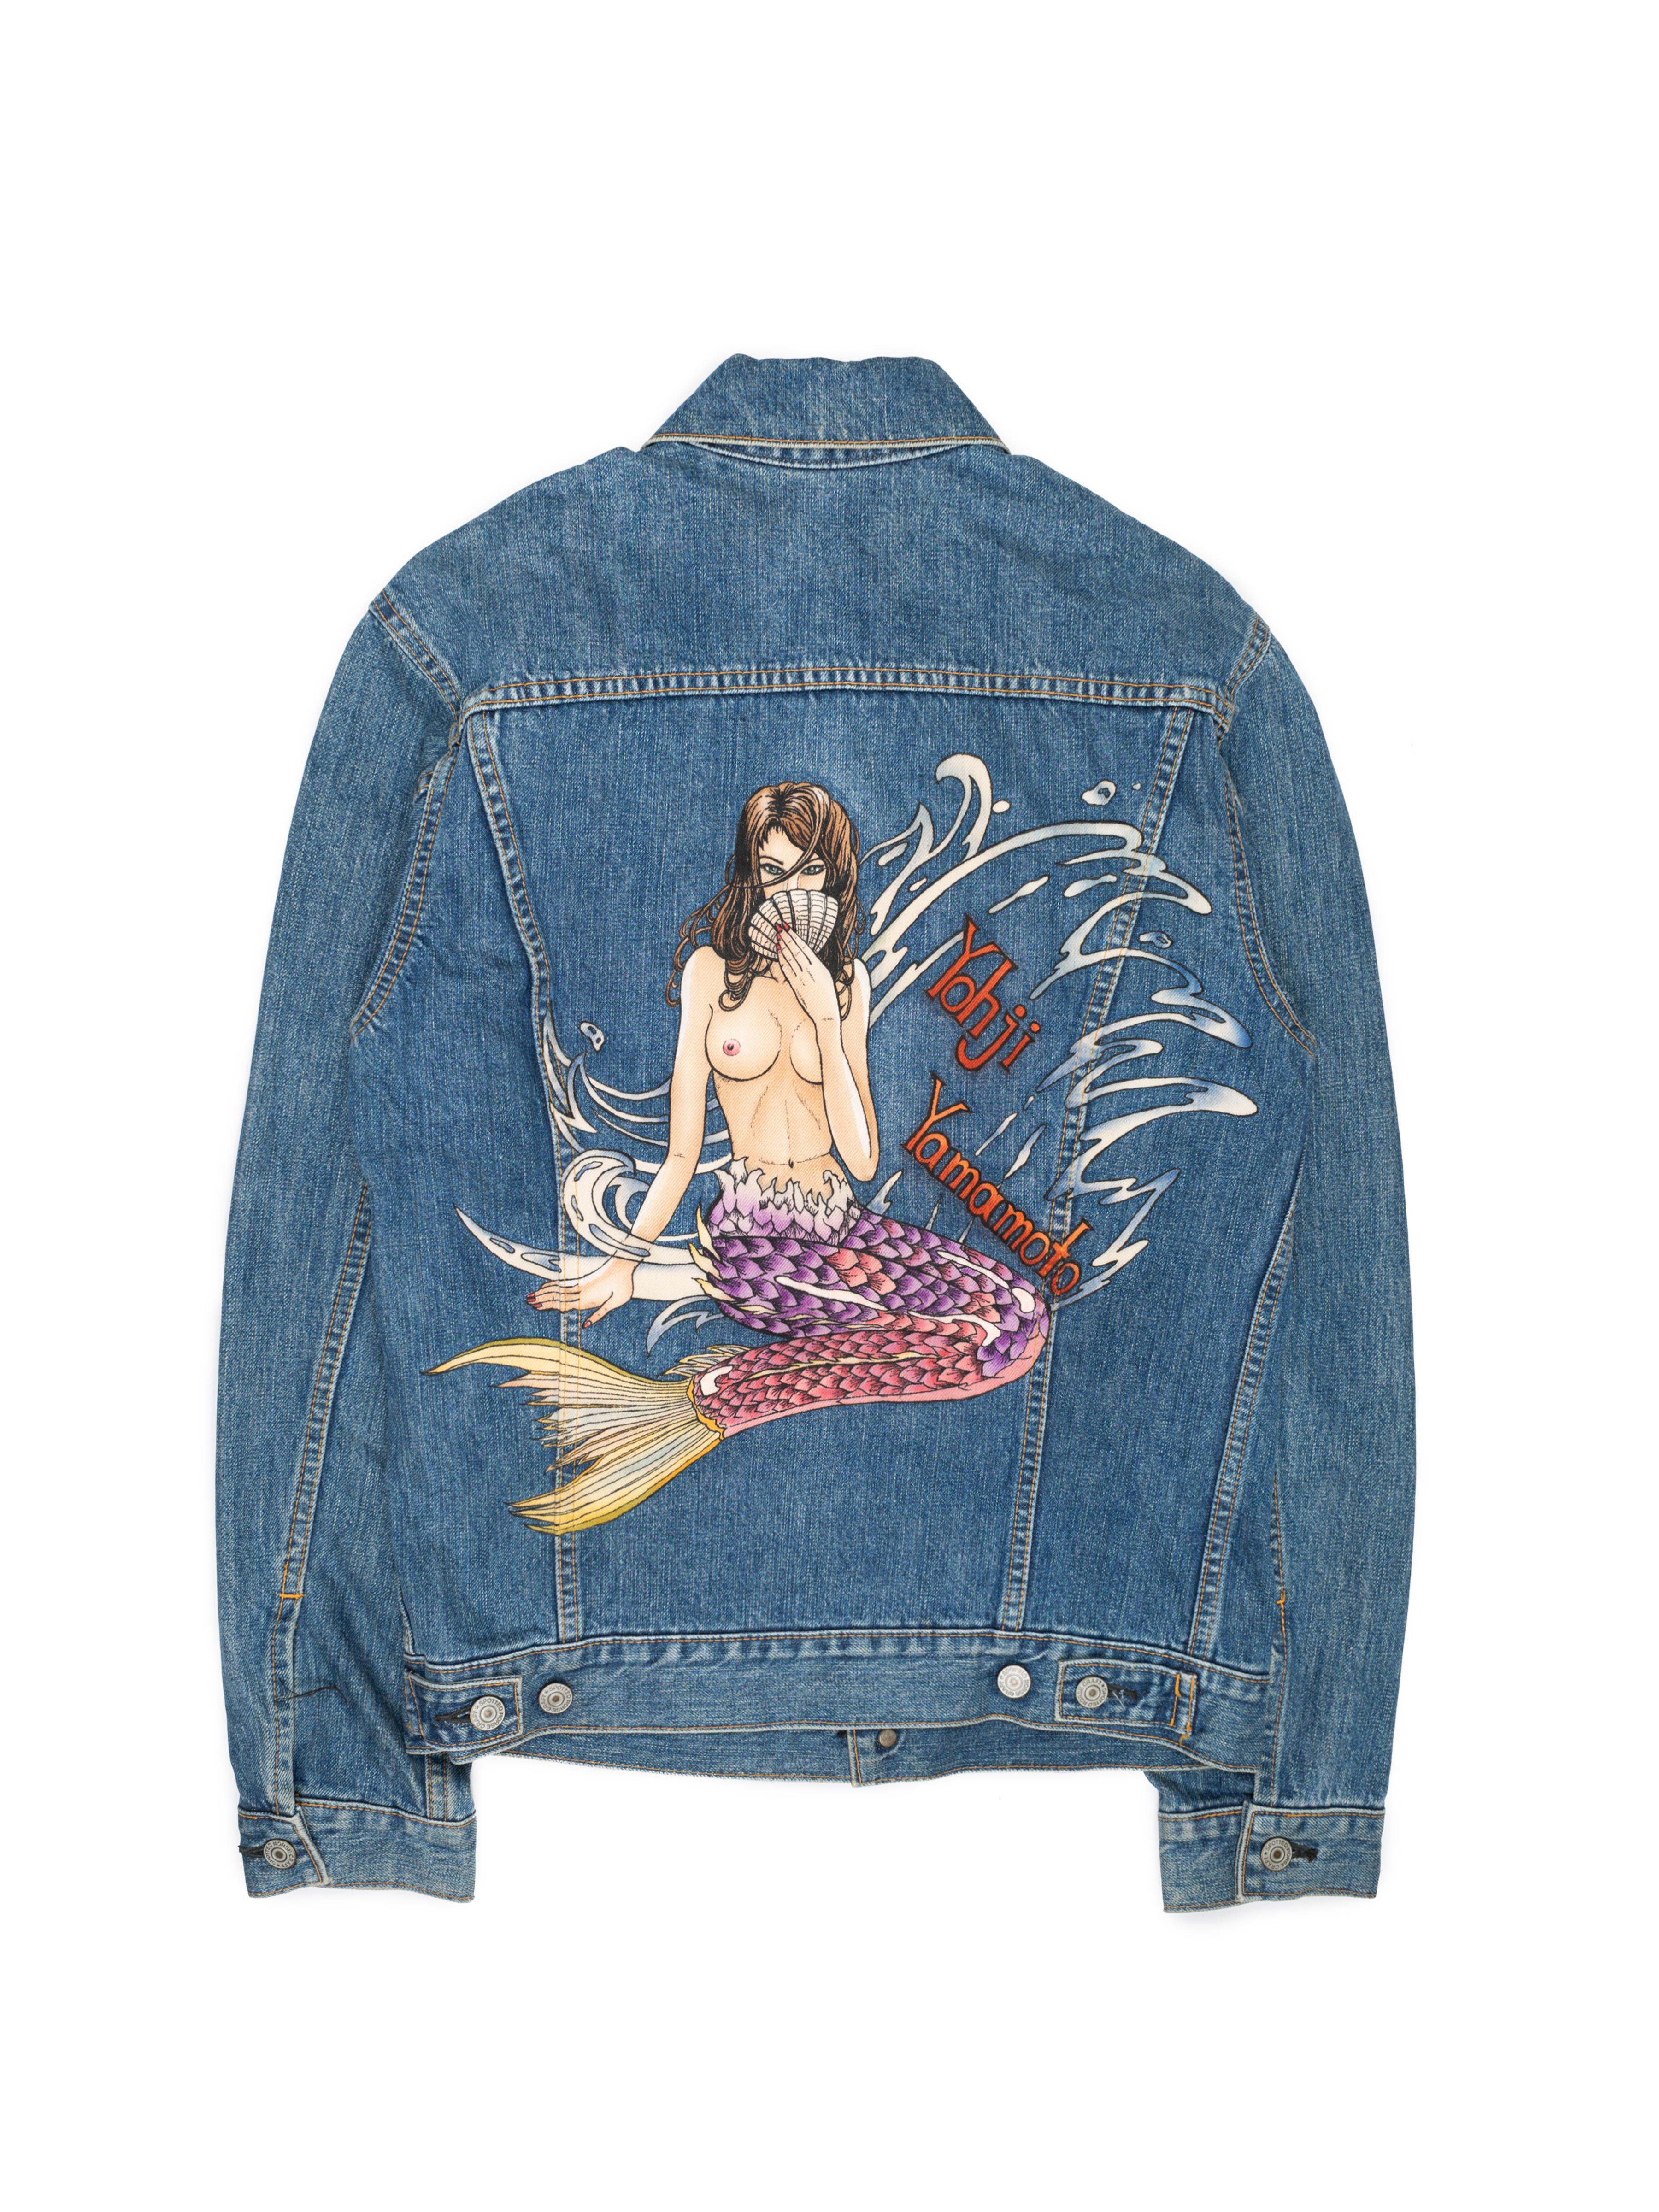 mermaid jacket